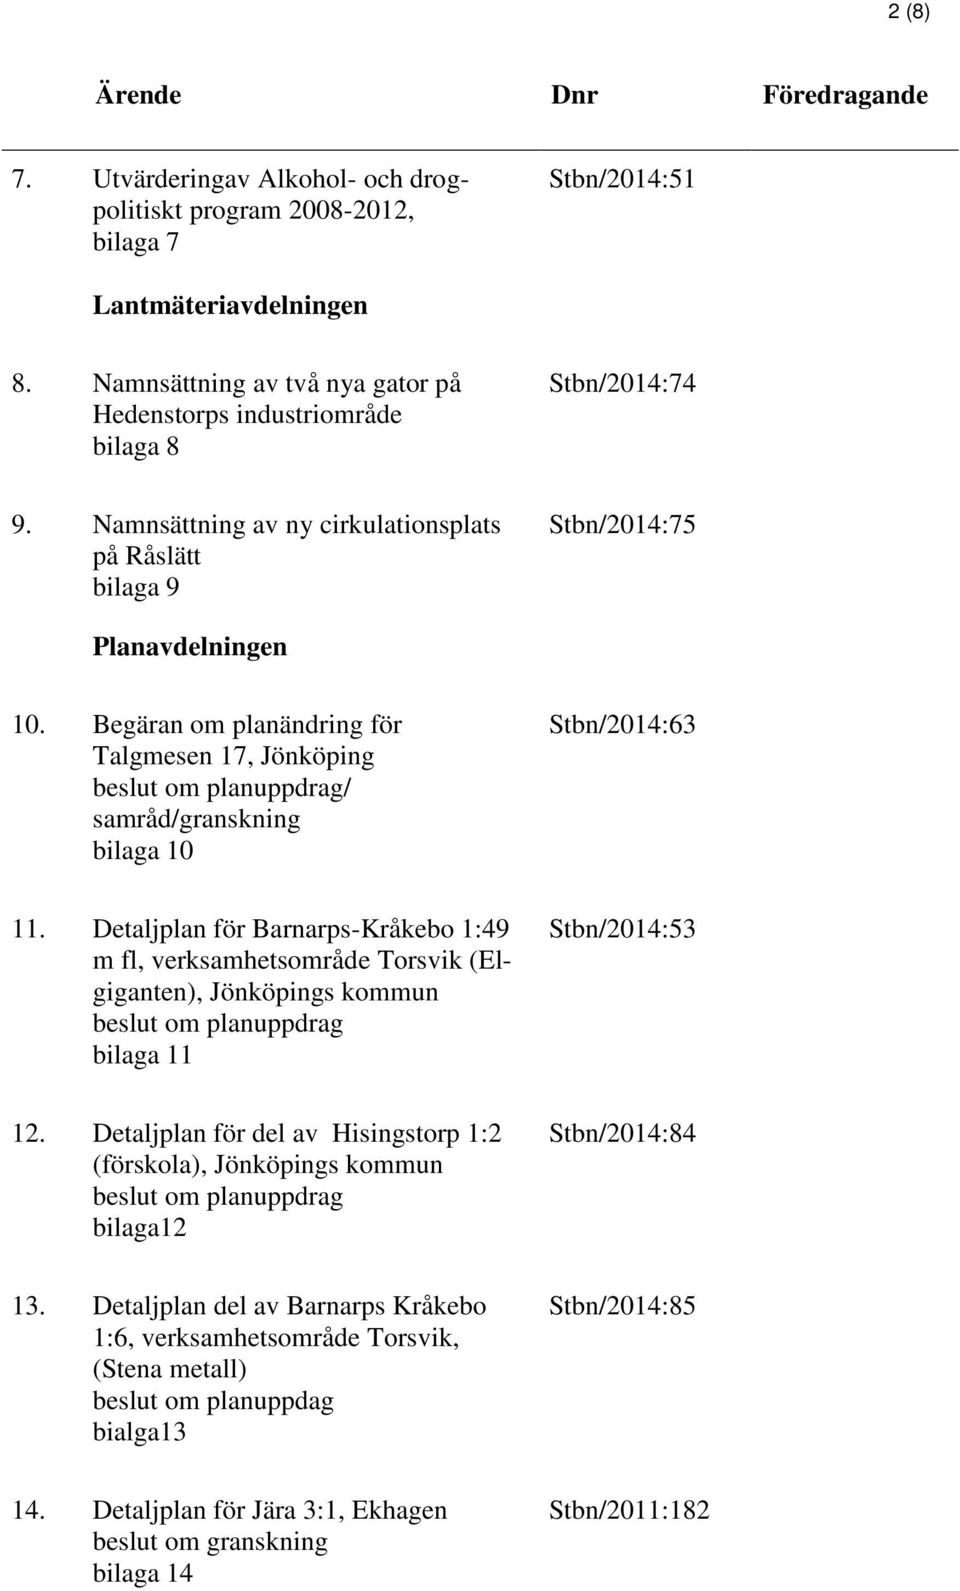 Begäran om planändring för Talgmesen 17, Jönköping beslut om planuppdrag/ samråd/granskning bilaga 10 Stbn/2014:63 11.